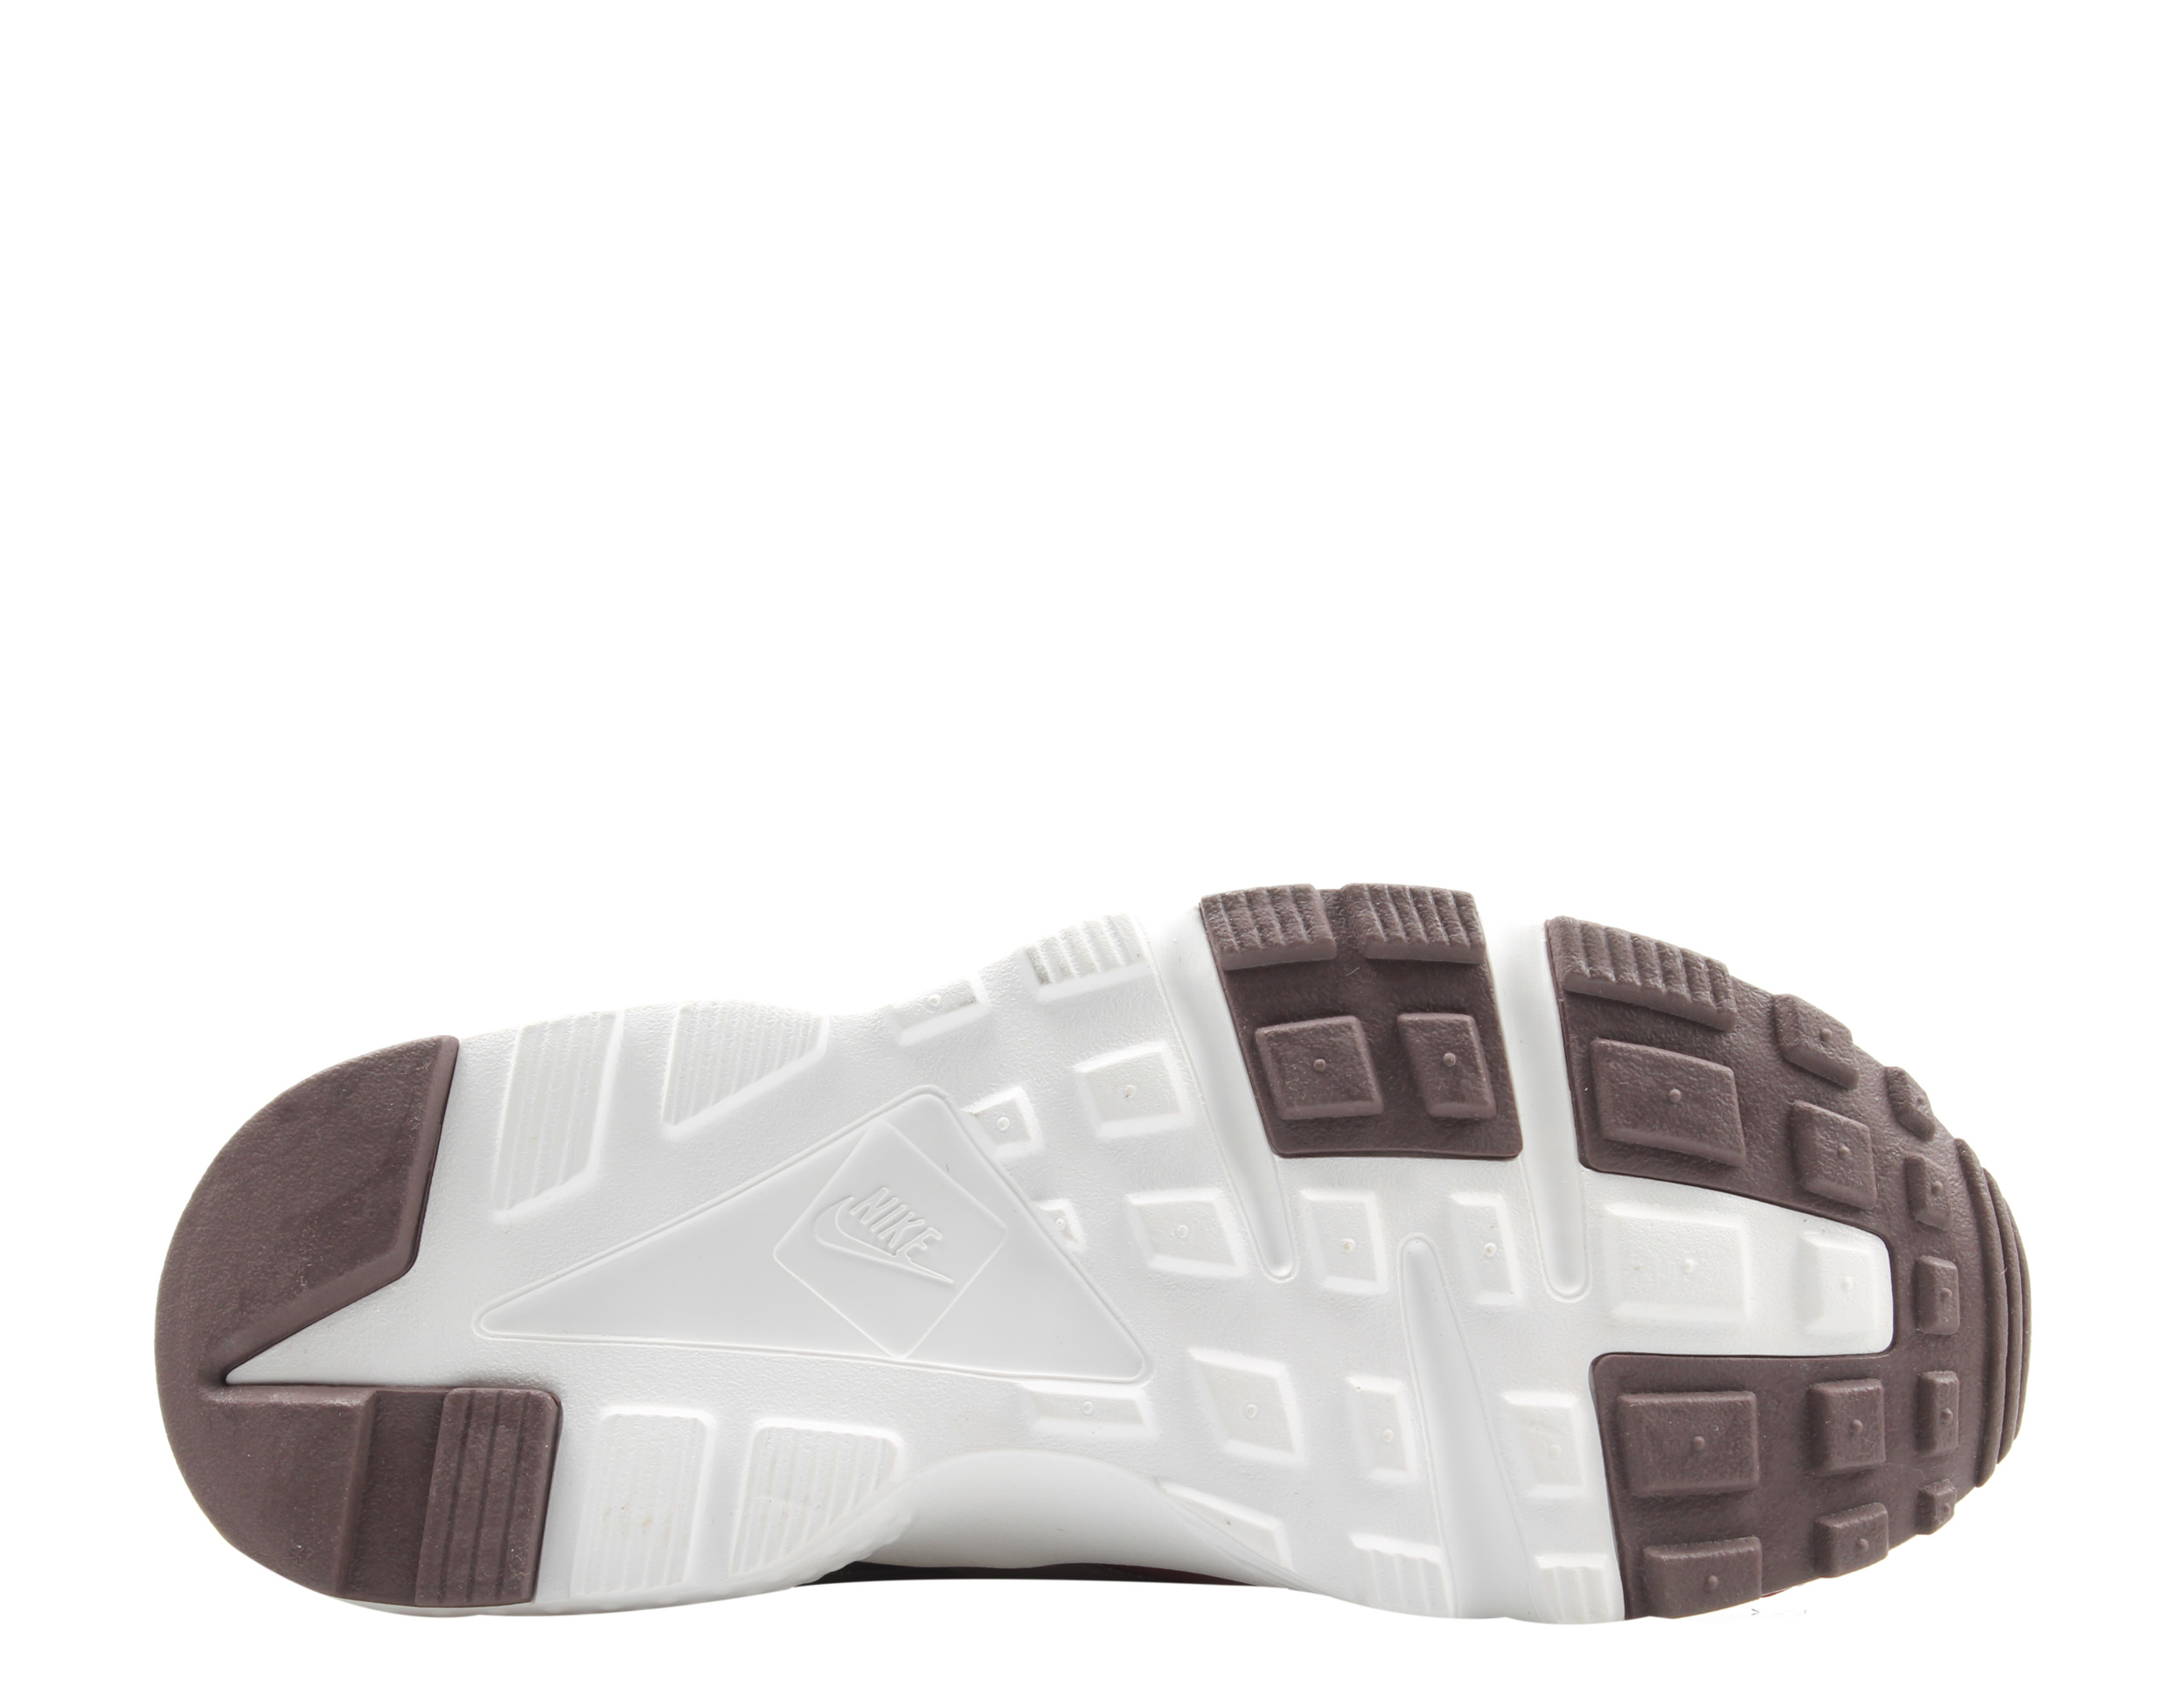 Nike Huarache Run TU (GS) Big Kids Running Shoes Size 3.5 - image 5 of 6